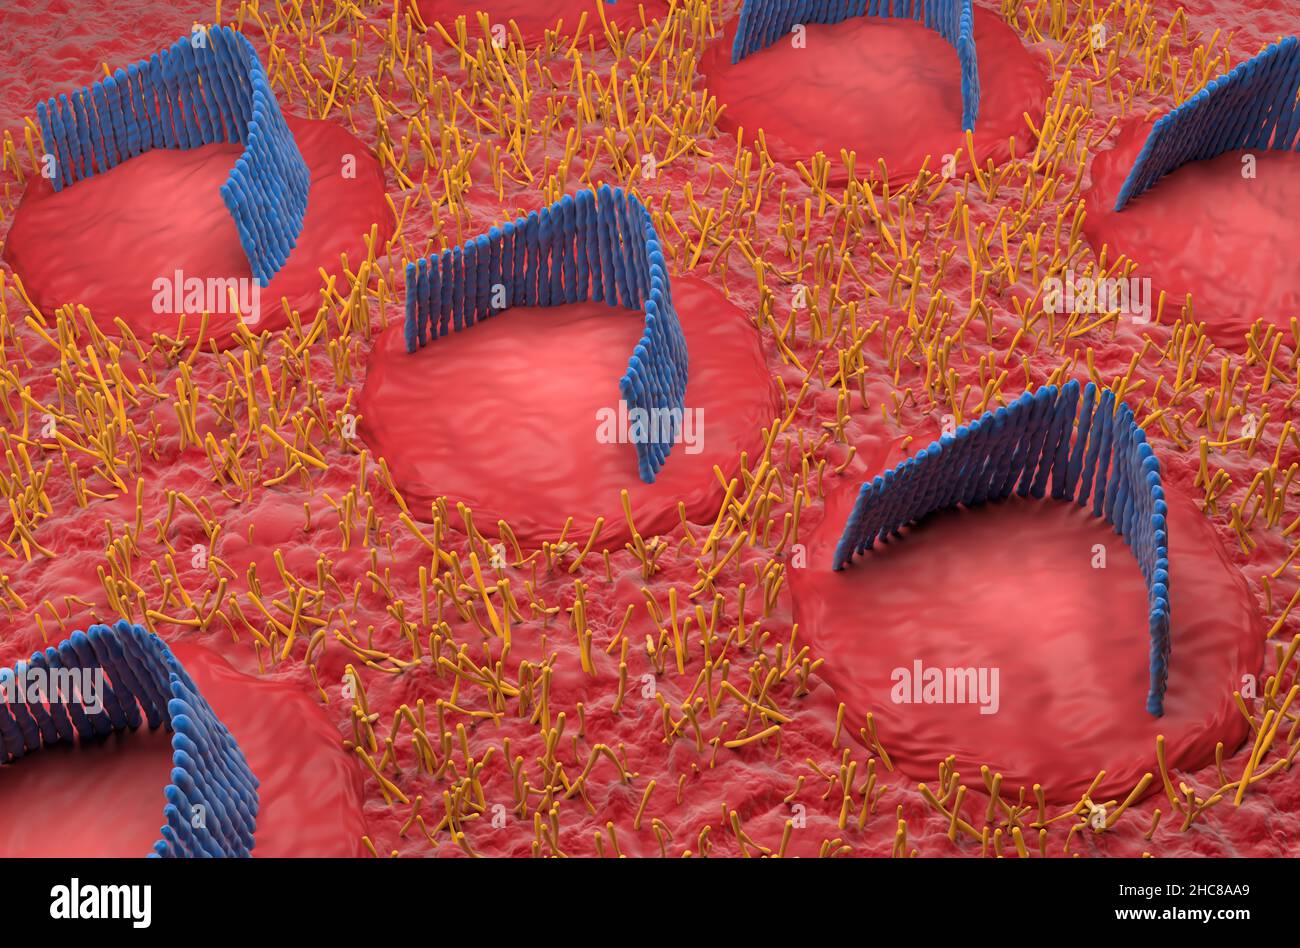 Cellules de l'oreille interne dans le système vestibulaire - vue isométrique 3D illustration Banque D'Images